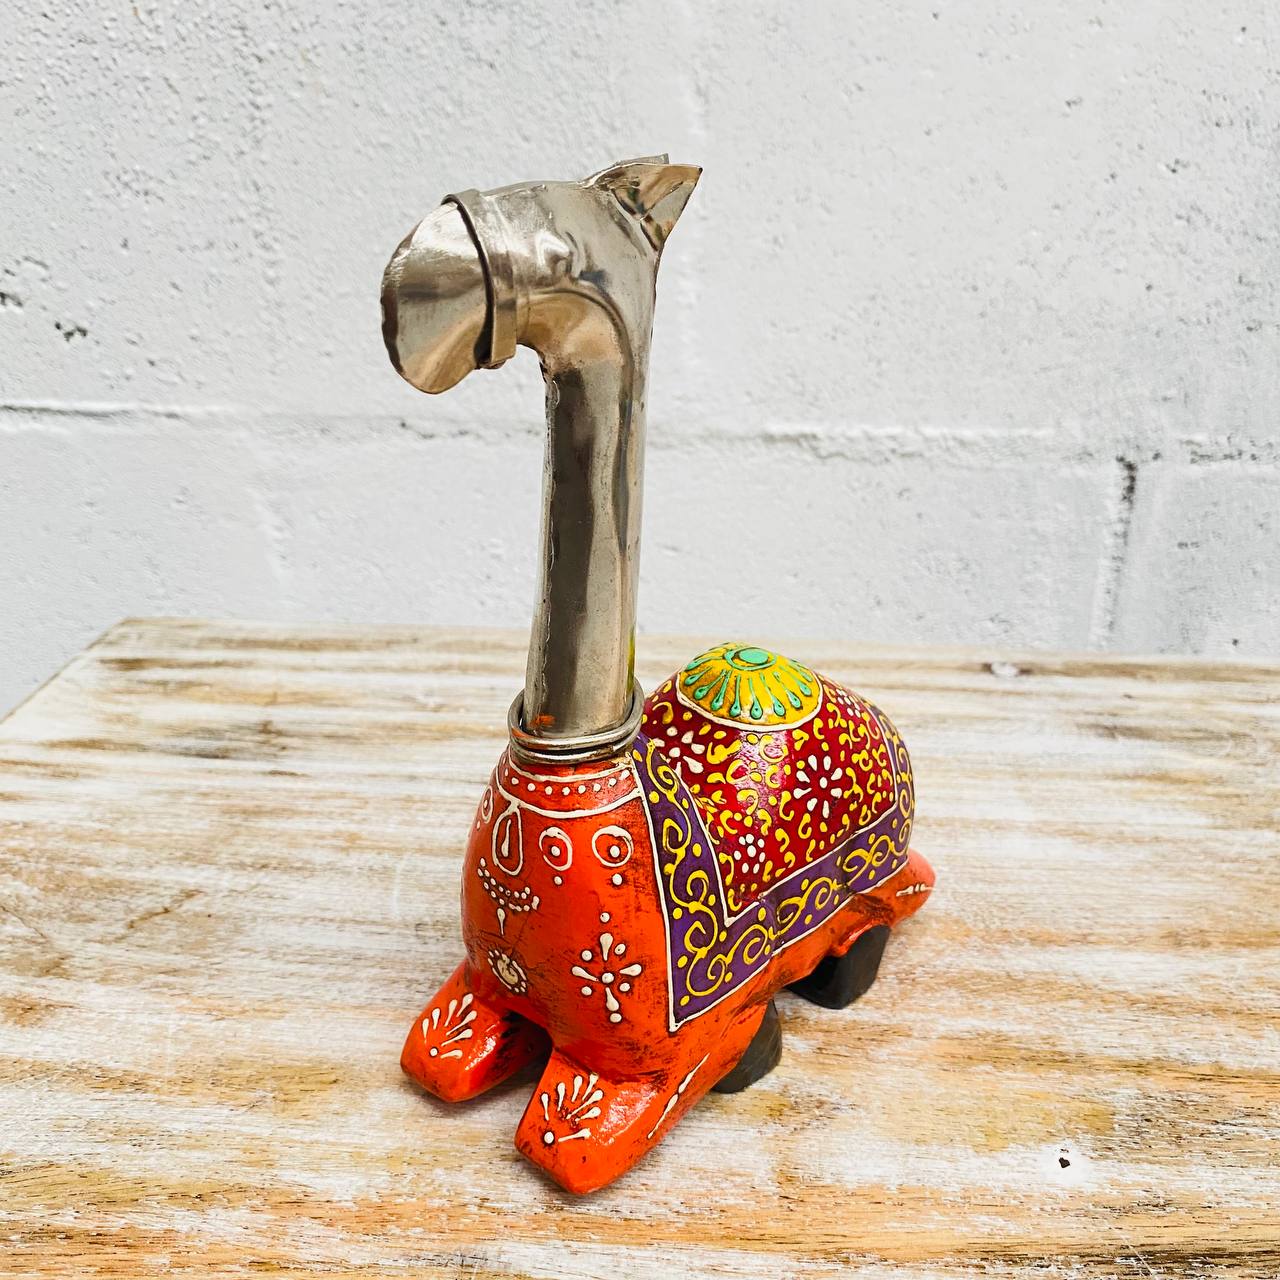 Figura de Camello "Elegancia Tallada" - Sentado, Tallado y Pintado a Mano en Madera y Latón con Dibujos en Colores Variados